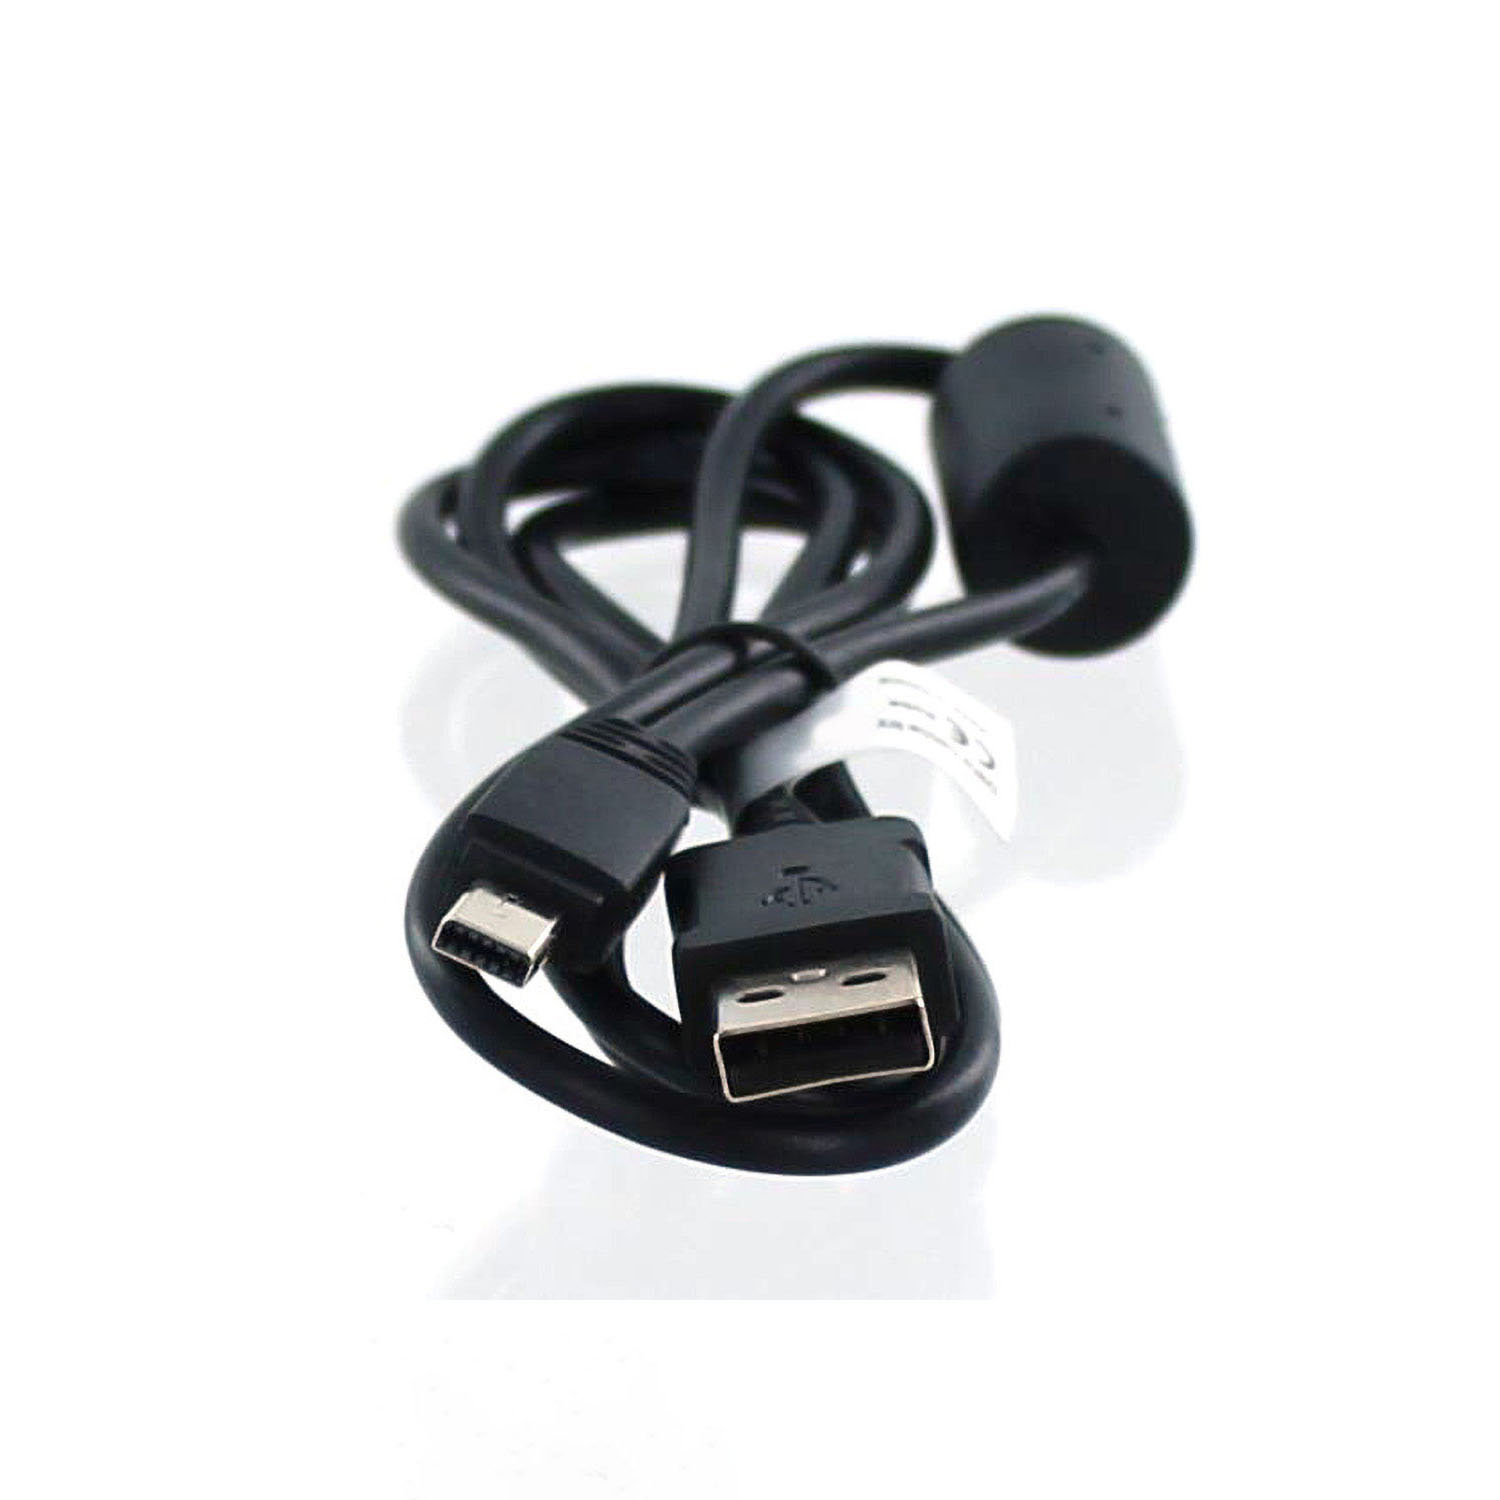 USB-Datenkabel EX-Z28 kompatibel schwarz Exilim Casio, Casio MOBILOTEC Zoom mit Zubehör